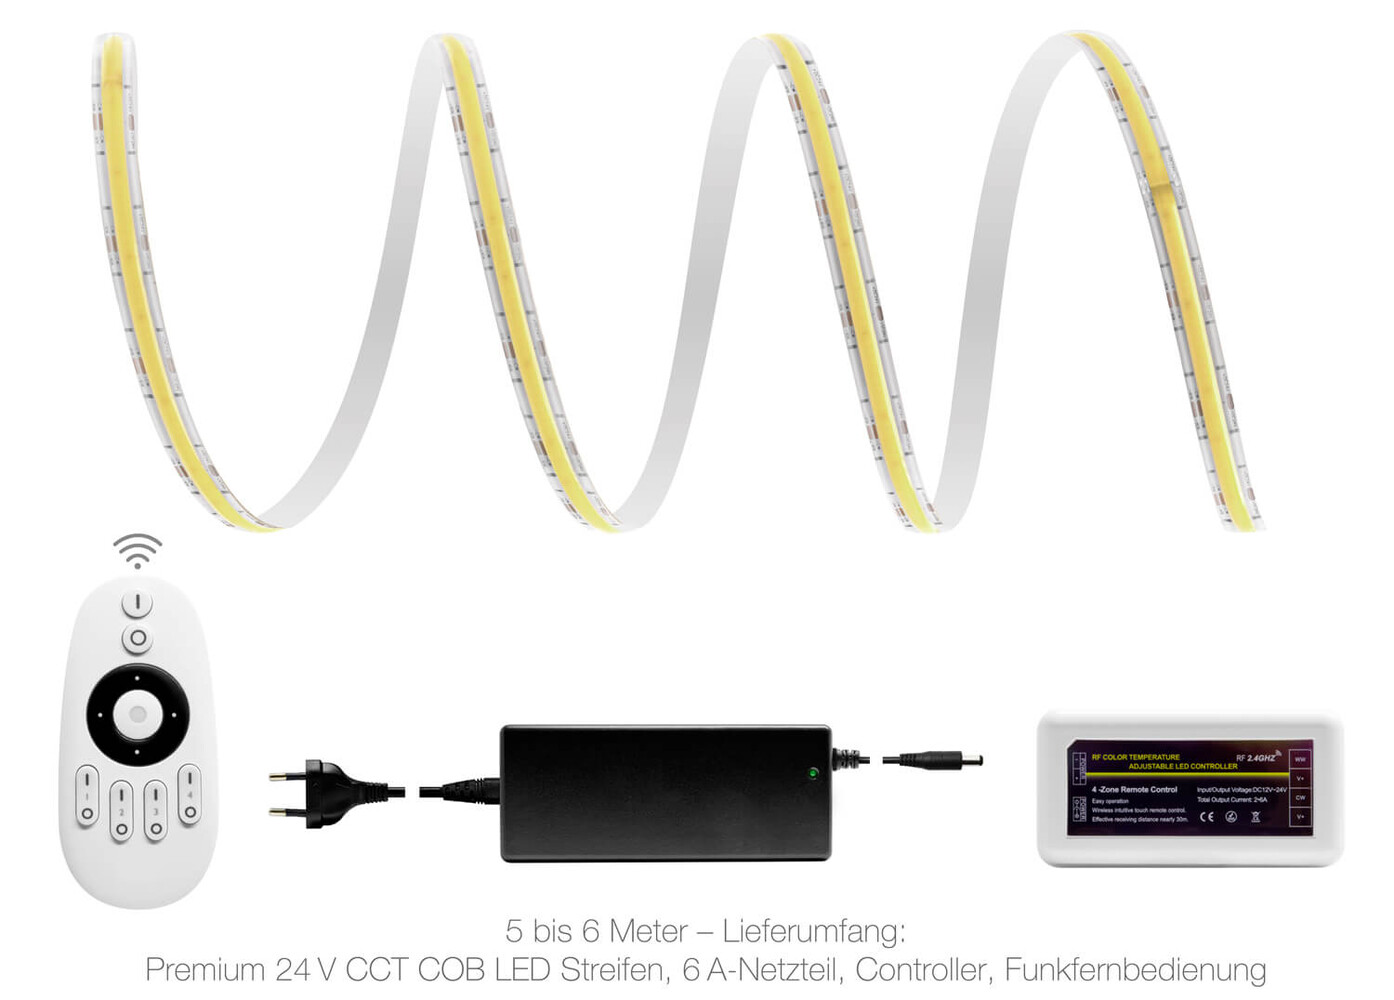 Hochwertiger LED-Streifen von LED Universum mit ausgezeichneter Farbtemperatur und Abdeckung